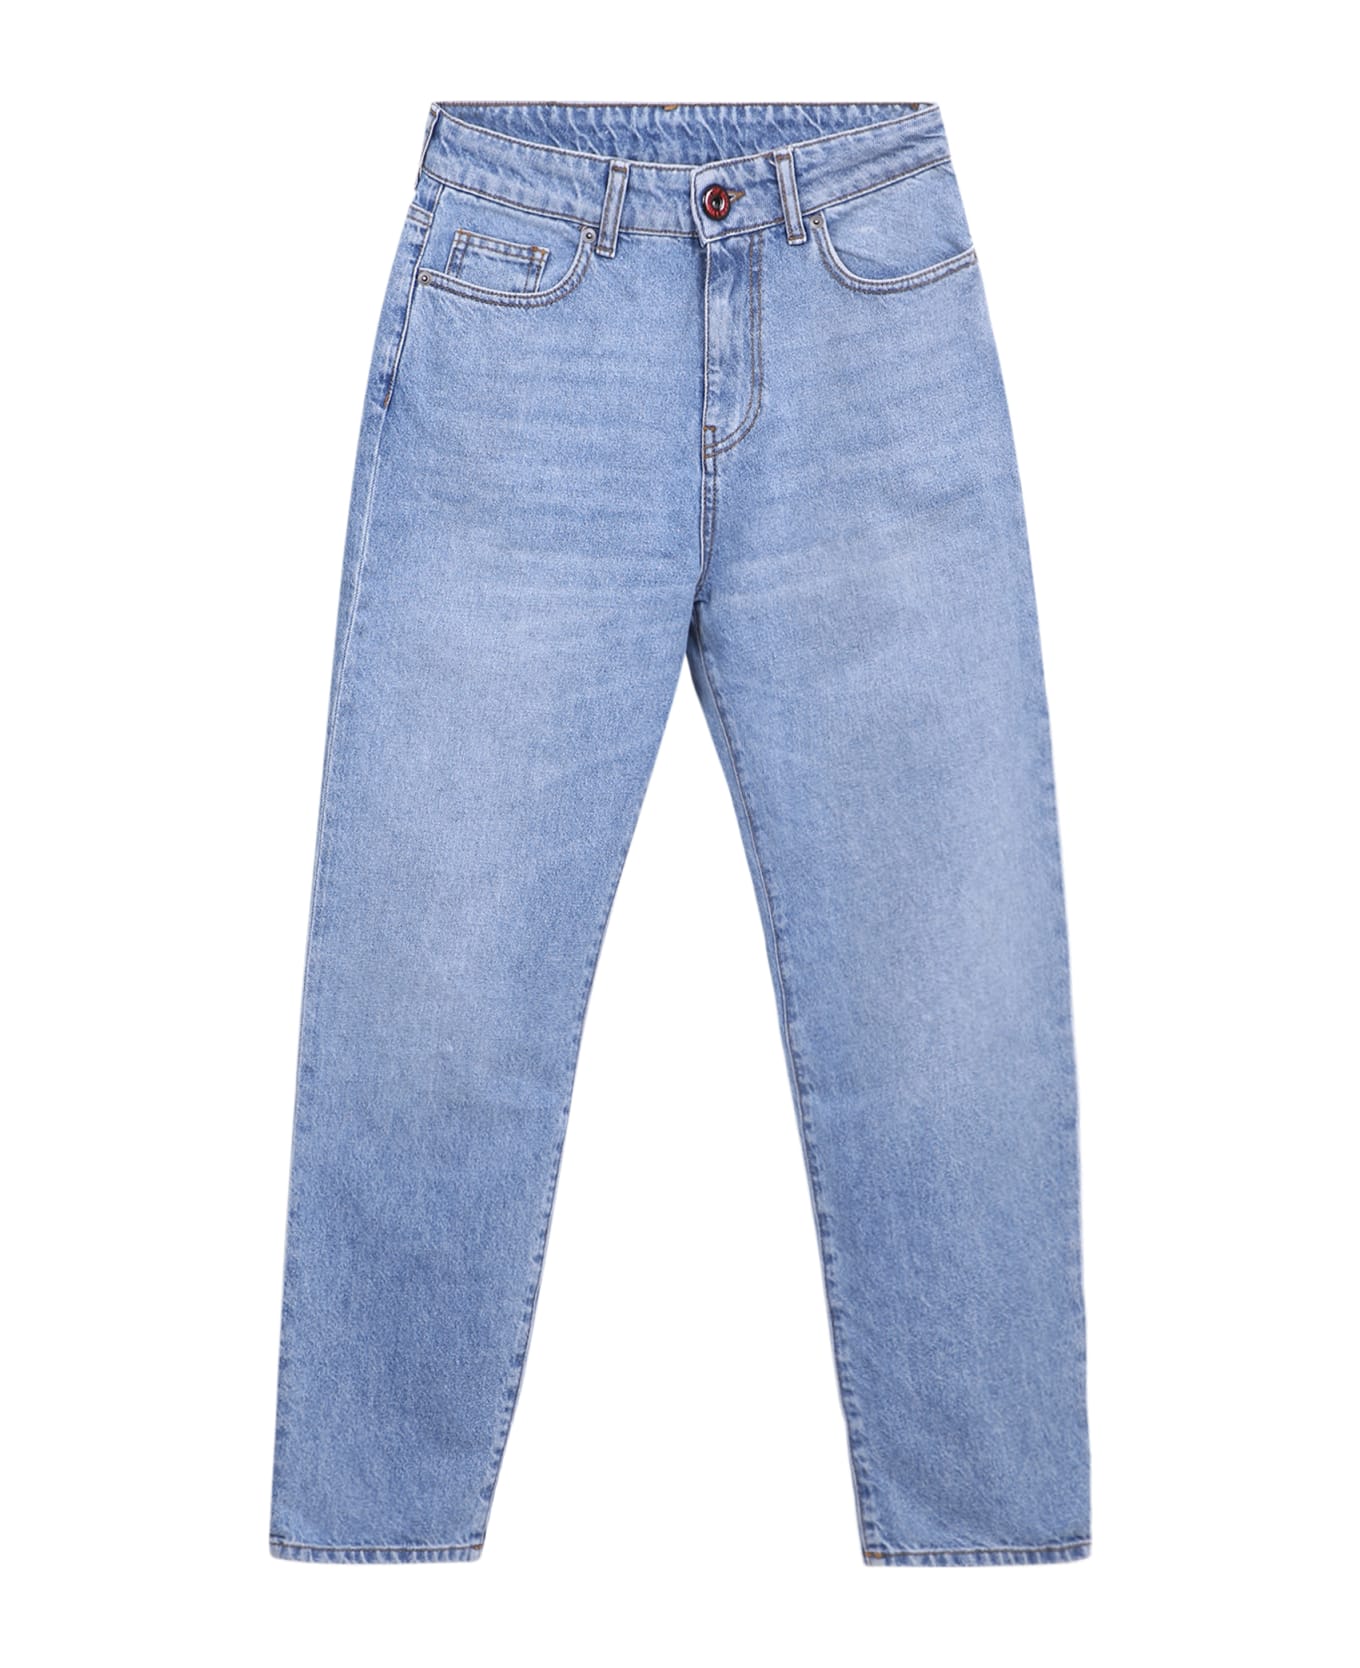 Vision of Super Coating Jeans - Blue